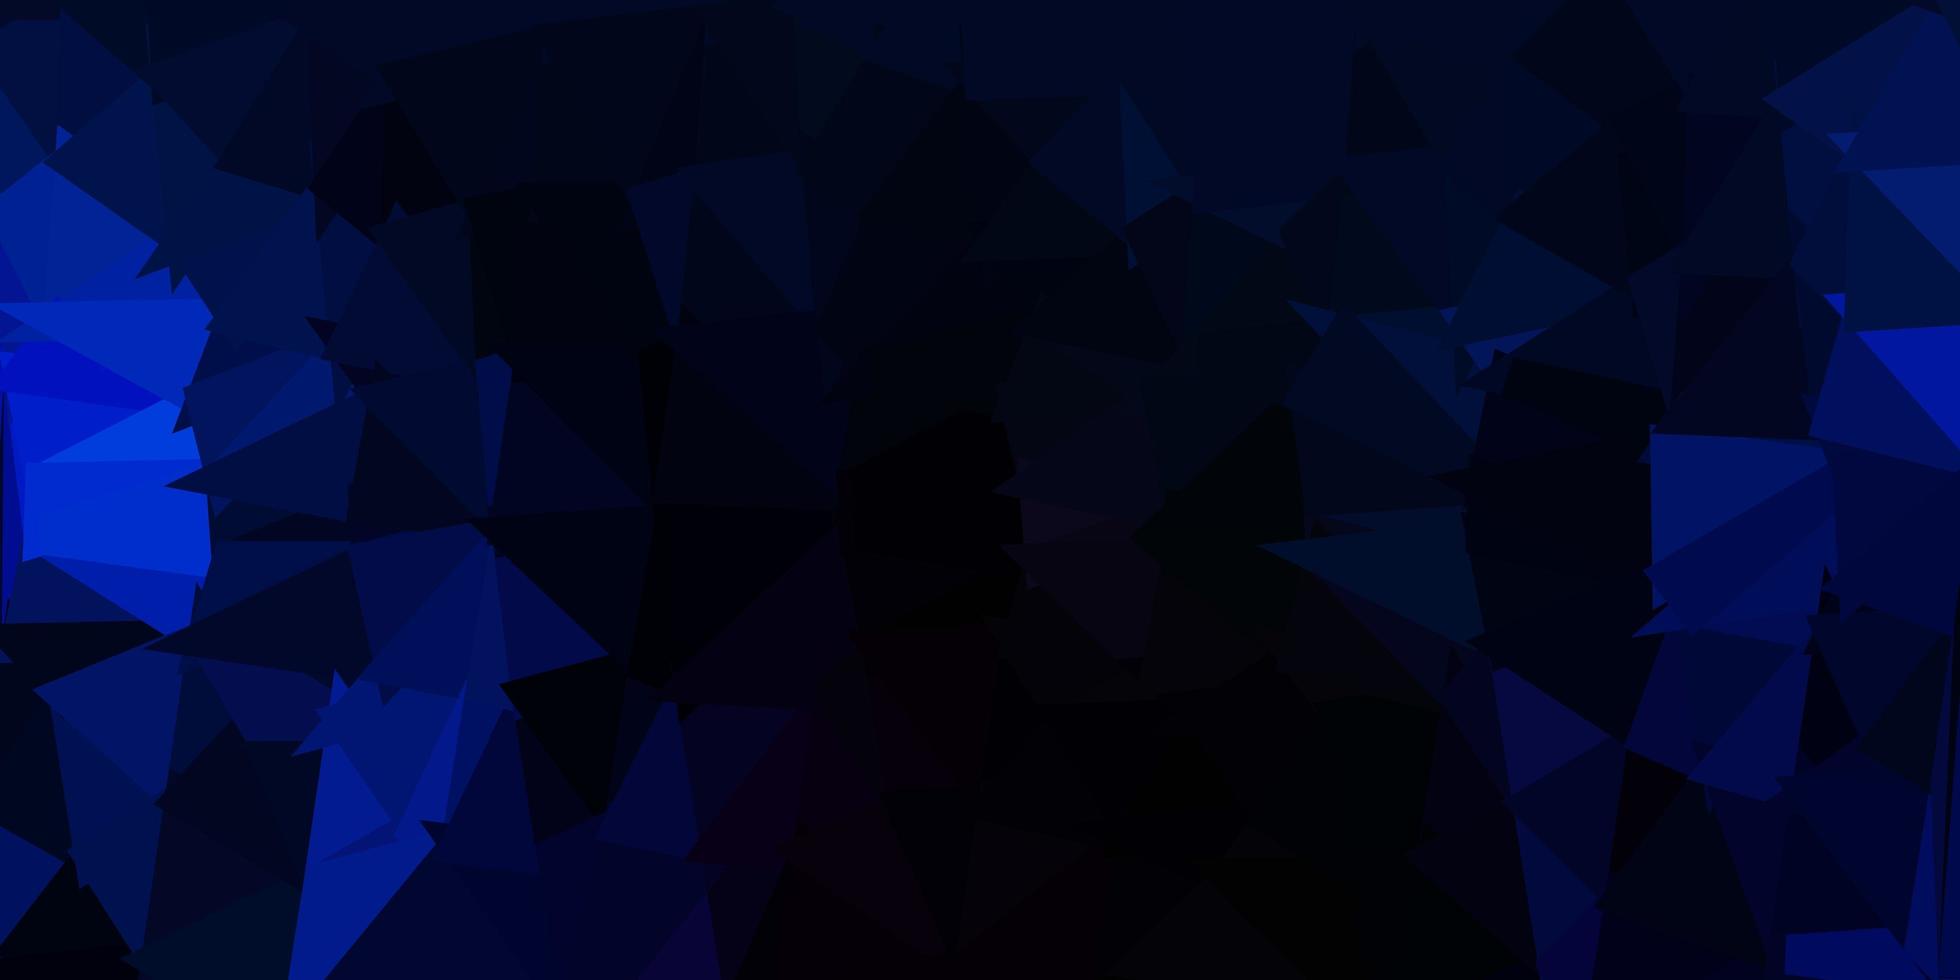 cenário poligonal de vetor azul escuro.